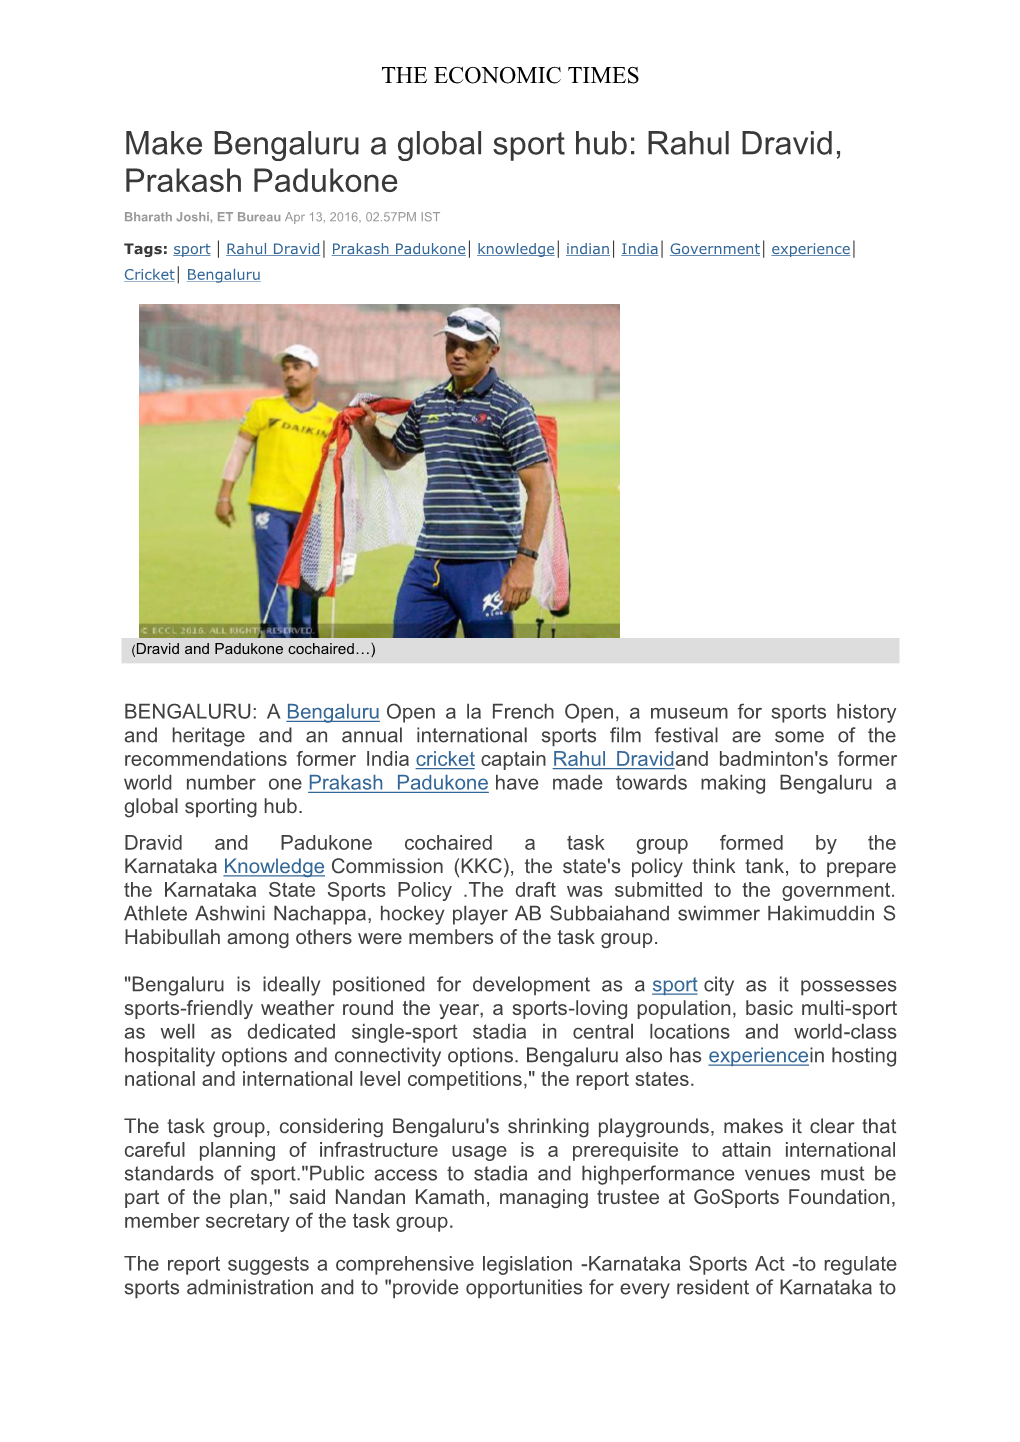 Make Bengaluru a Global Sport Hub: Rahul Dravid, Prakash Padukone Bharath Joshi, ET Bureau Apr 13, 2016, 02.57PM IST